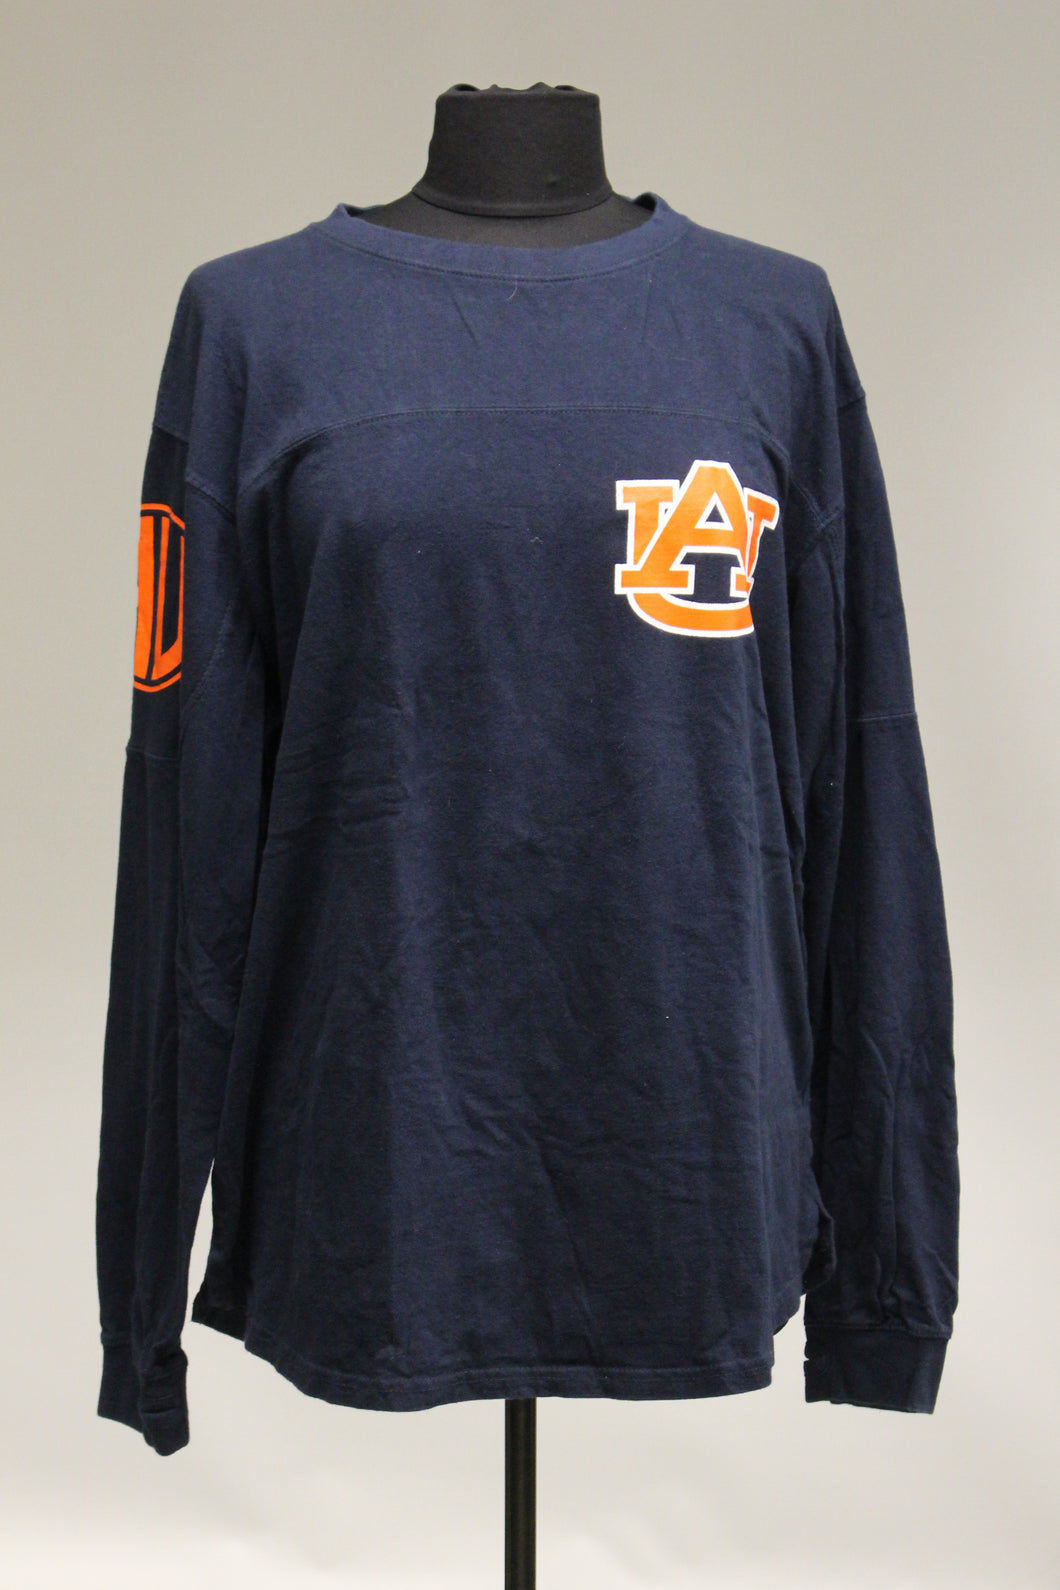 Auburn University UA War Eagle Long Sleeve T-Shirt - Size: Large - Used